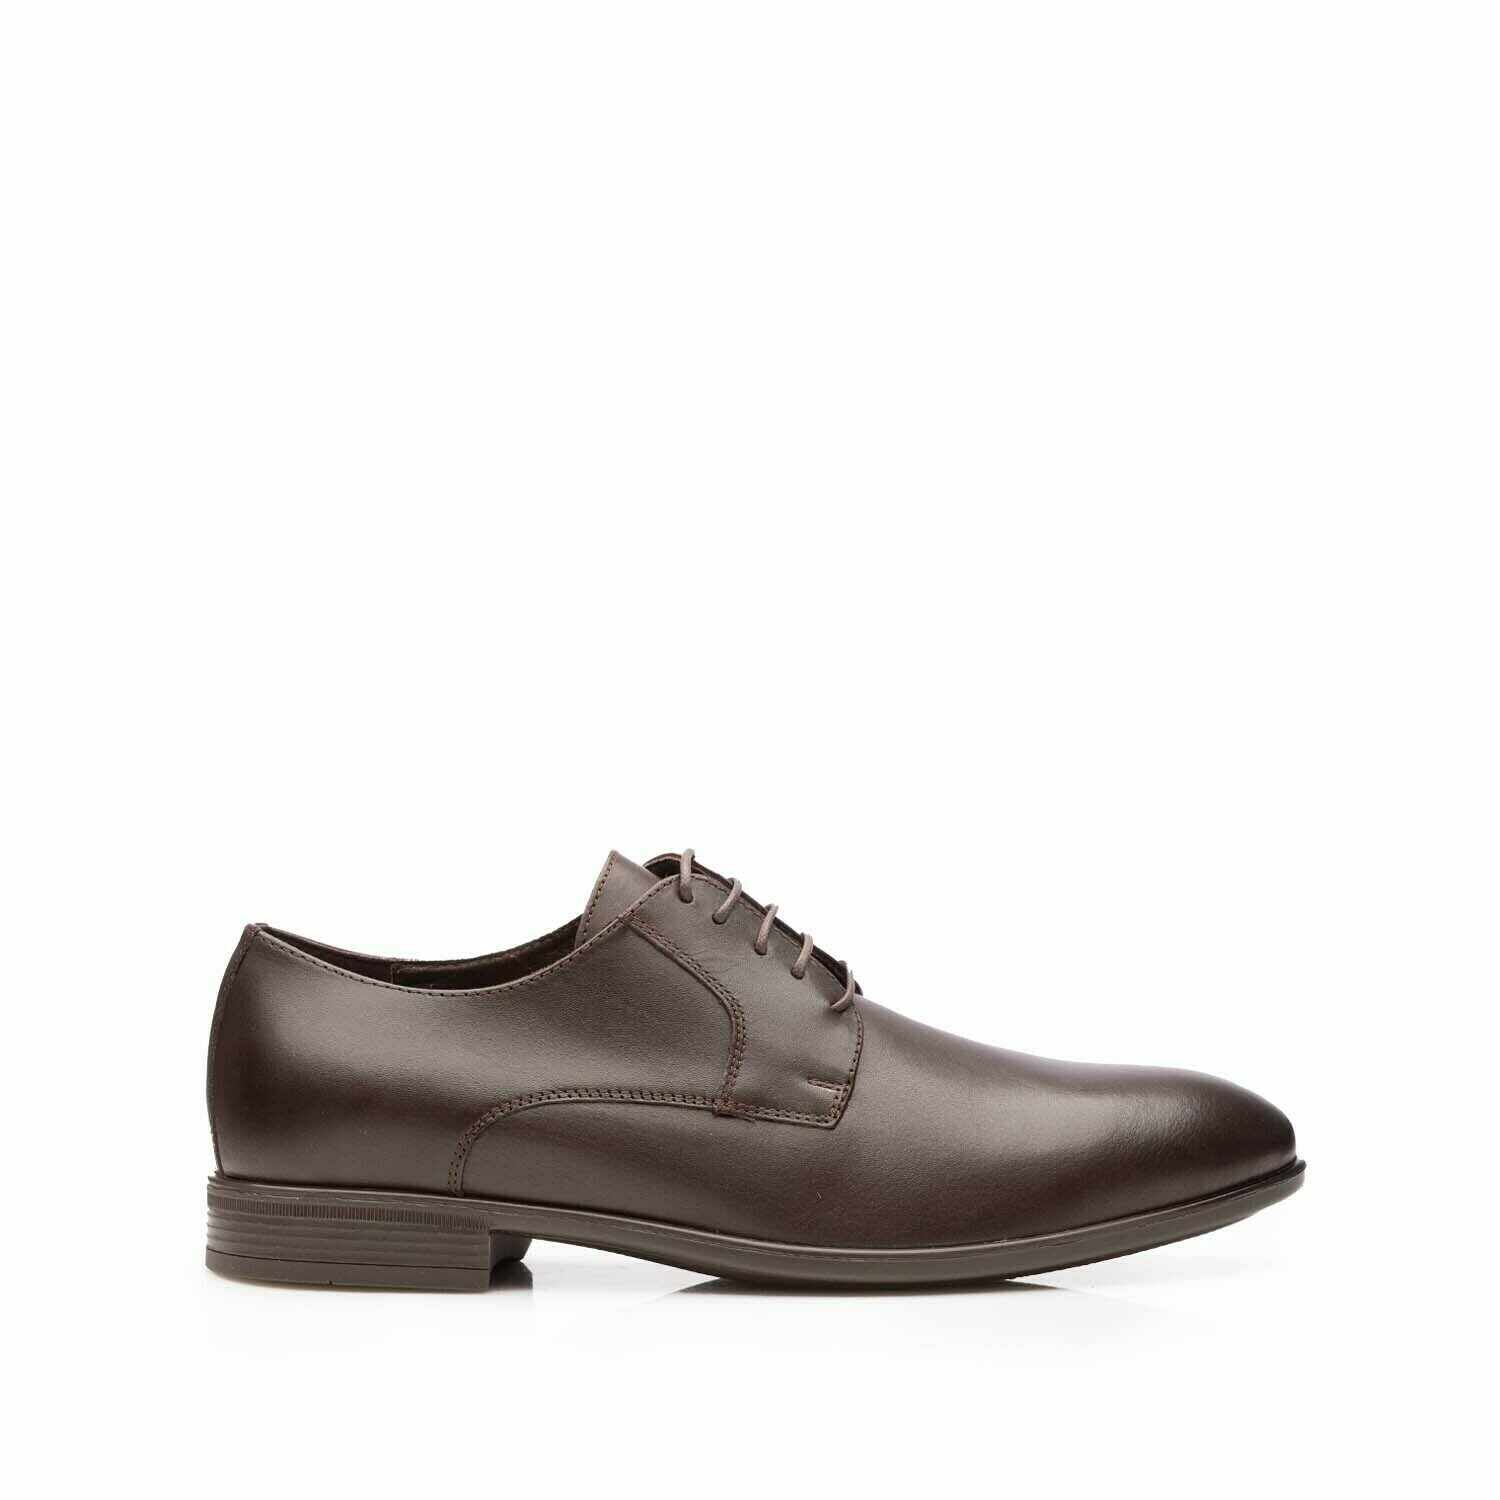 Pantofi eleganţi bărbaţi din piele naturală, Leofex - 622 Mogano box